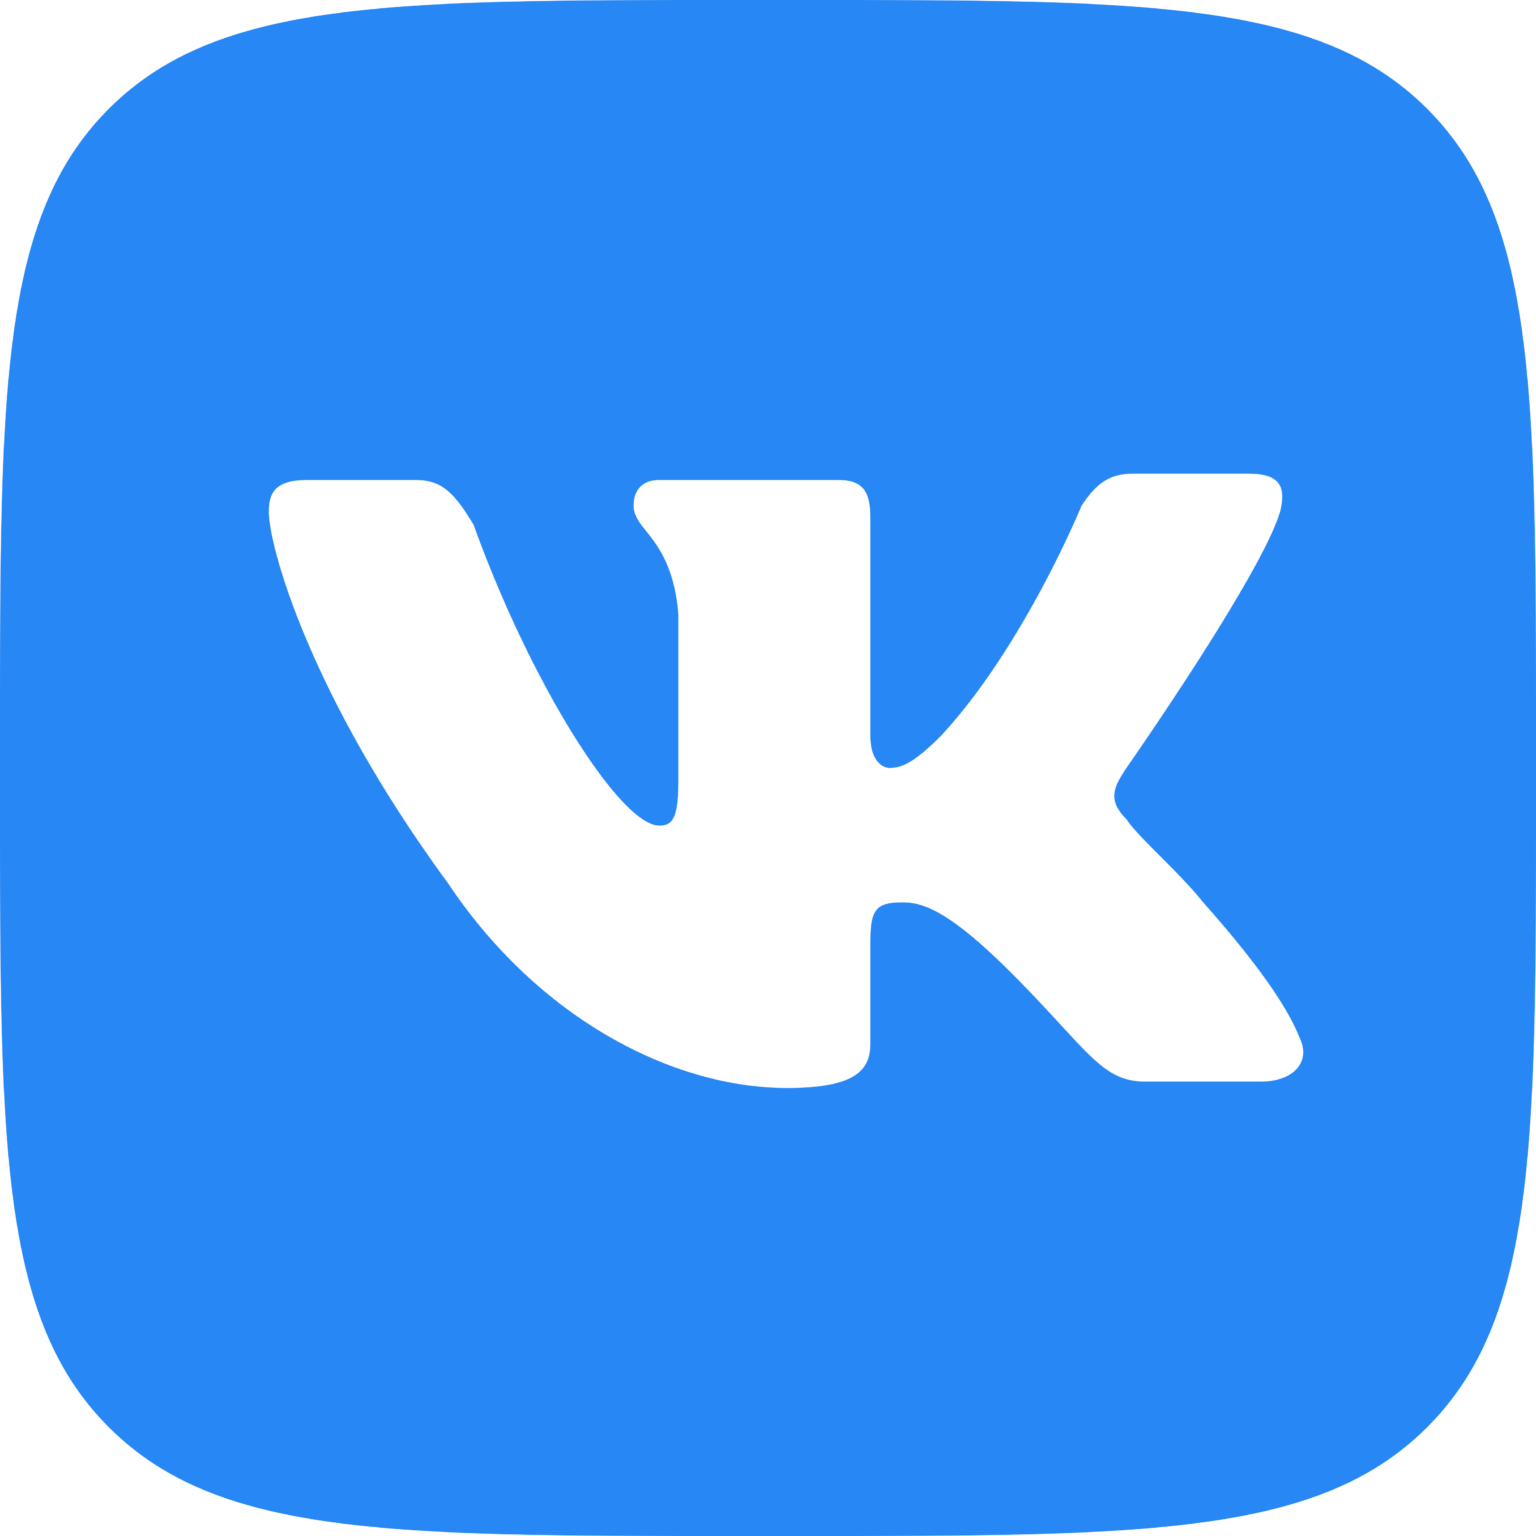 Yik Yak – Logos Download